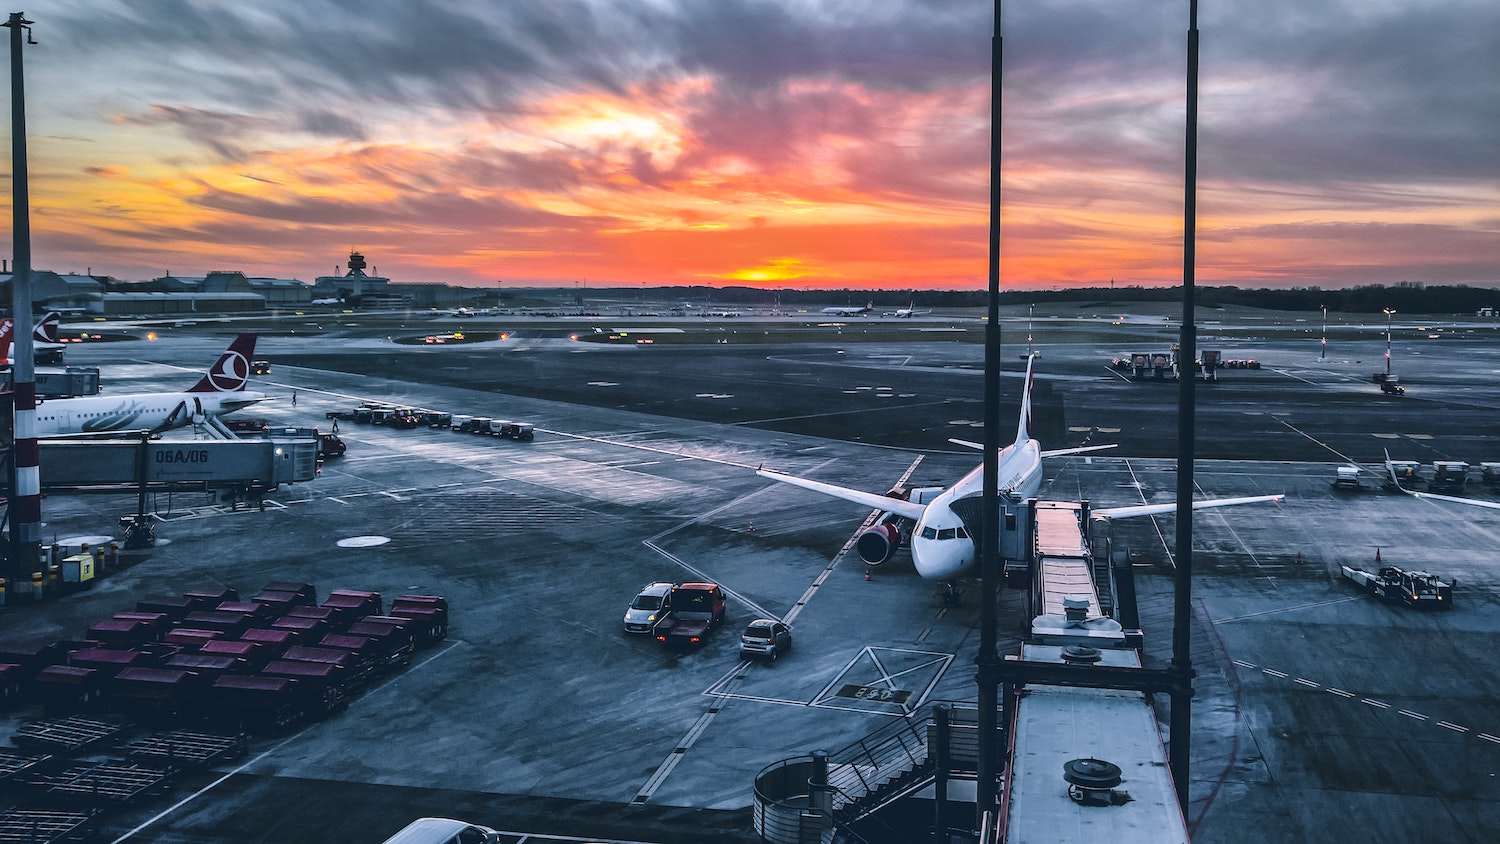 Der Flughafen Hamburg hat bei den Skytrax World Airport Awards mehrere Auszeichnungen erhalten und ist unter anderem bester Regionalflughafen in Europa geworden. Foto: Unsplash / Mika Baumeister